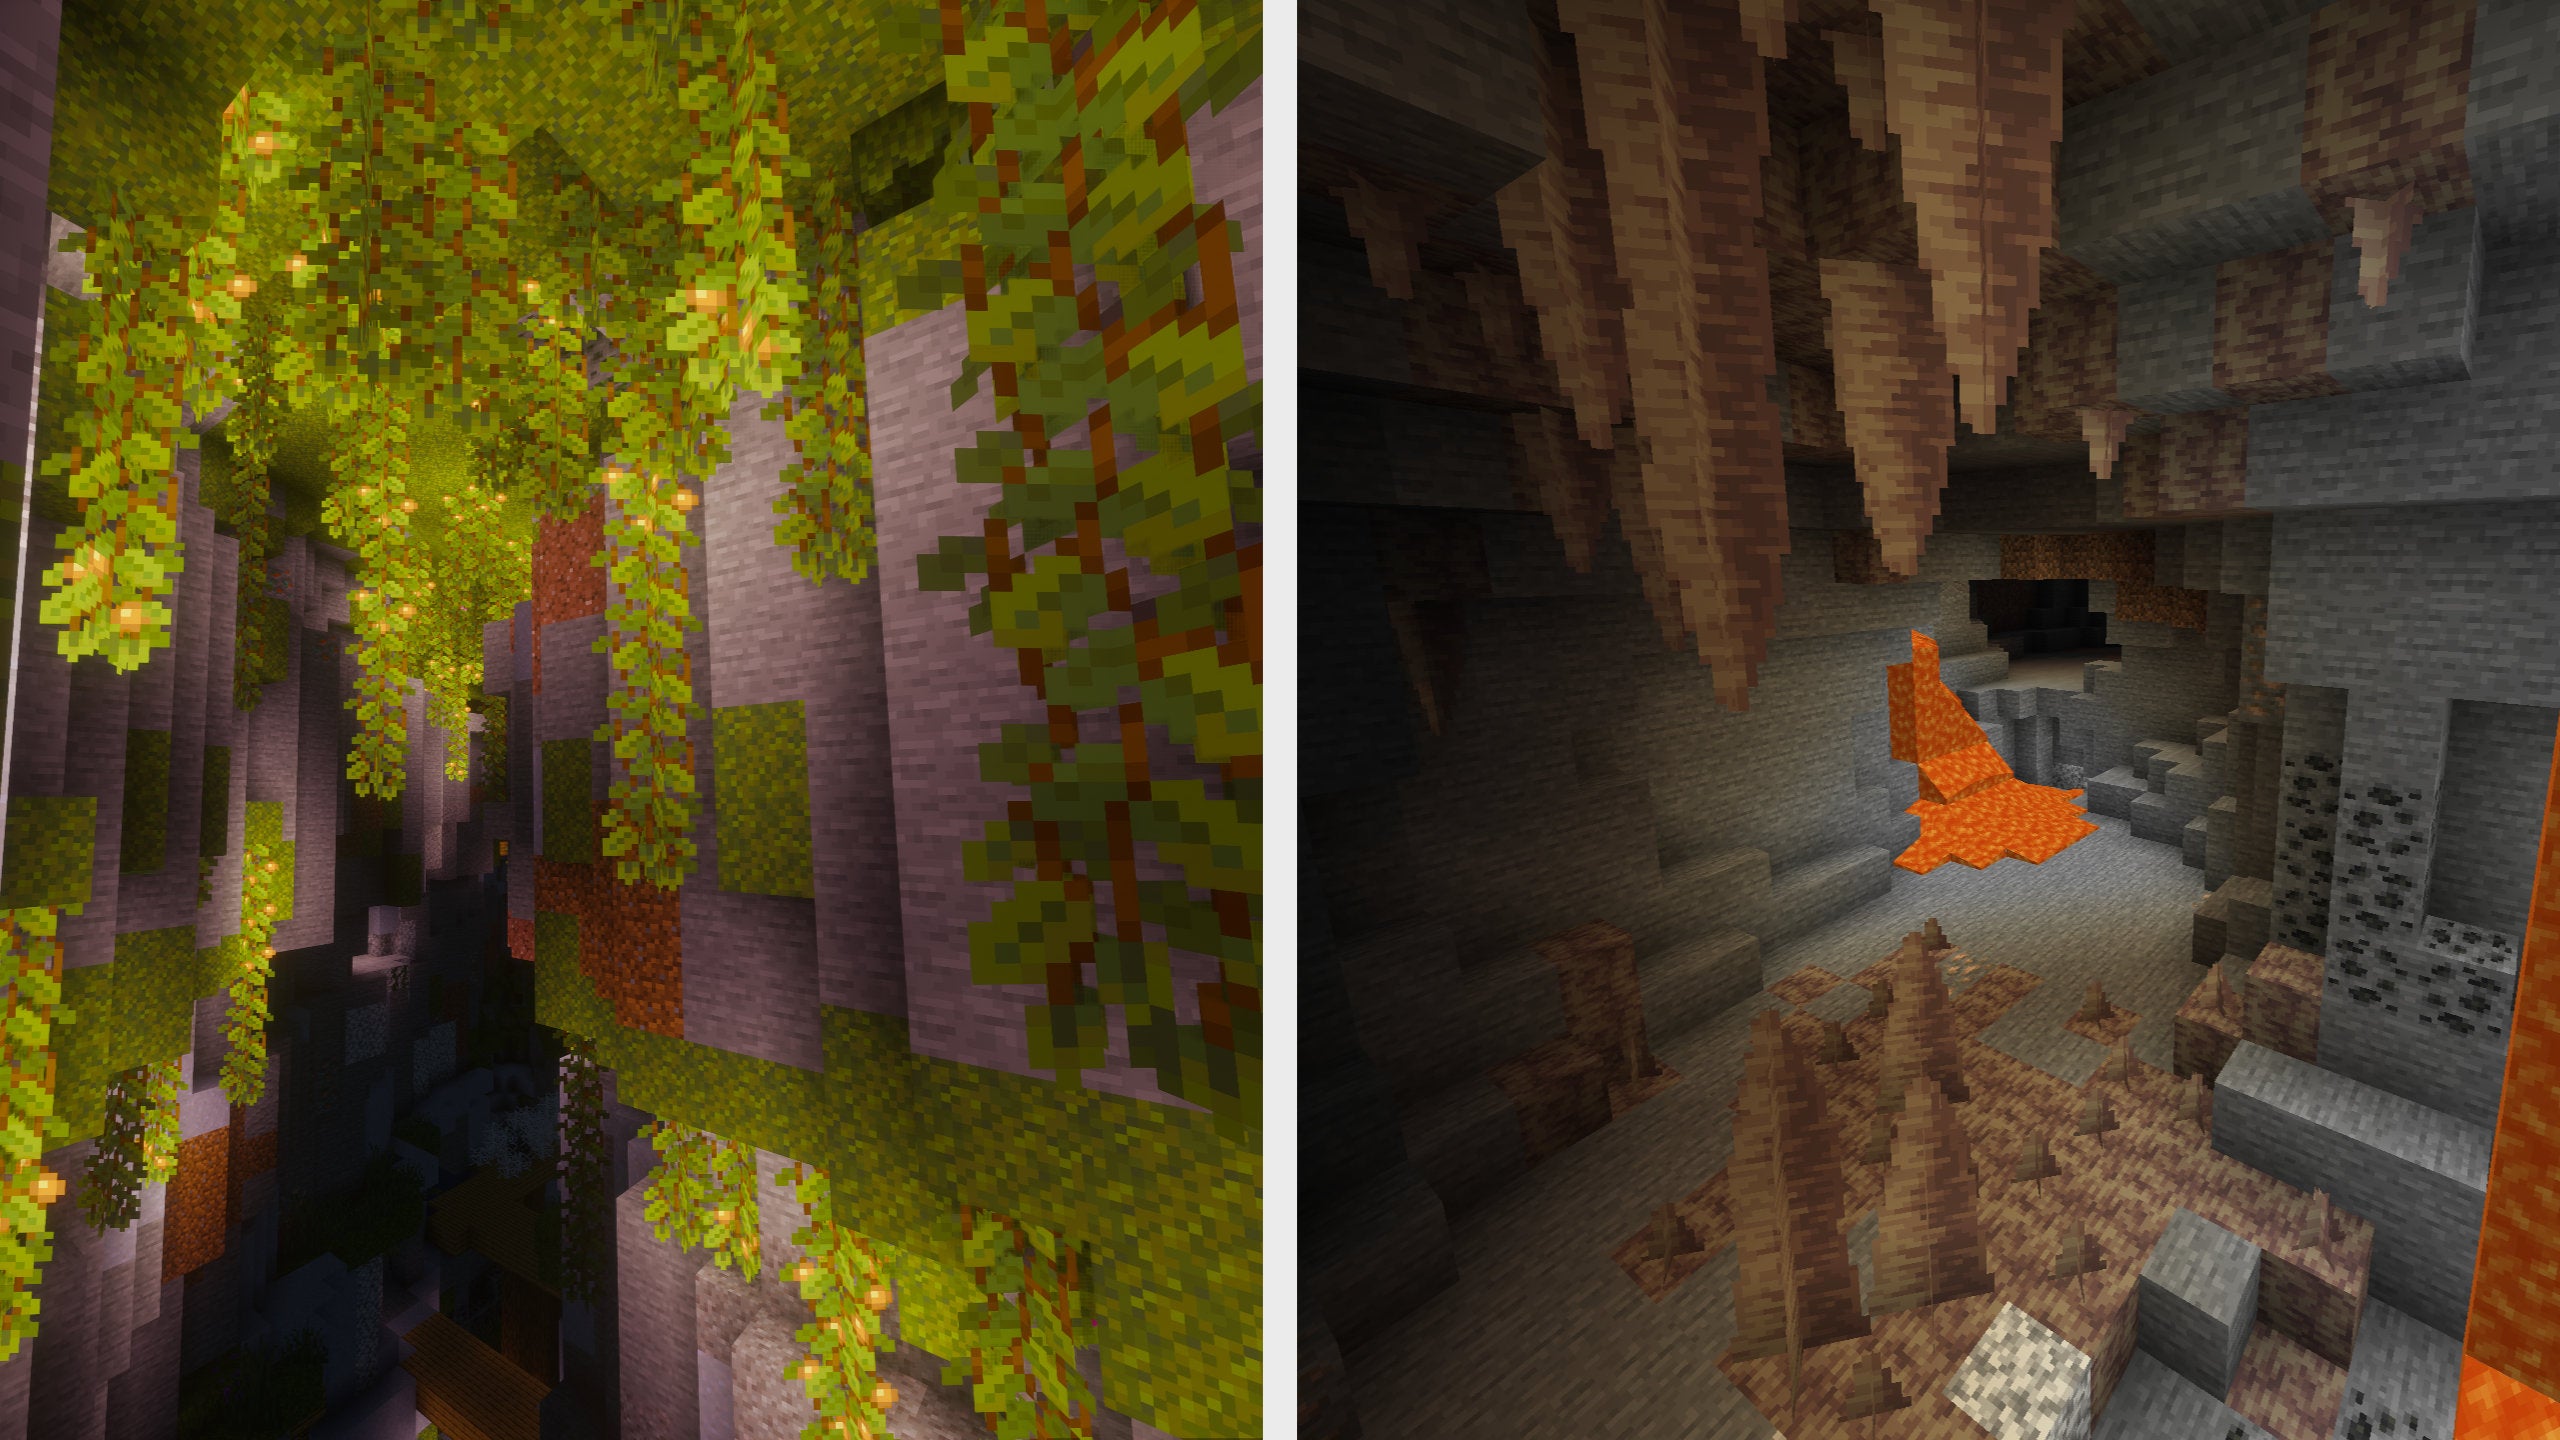 A growth of Sculk Blocks across a flat grassland world in Minecraft.